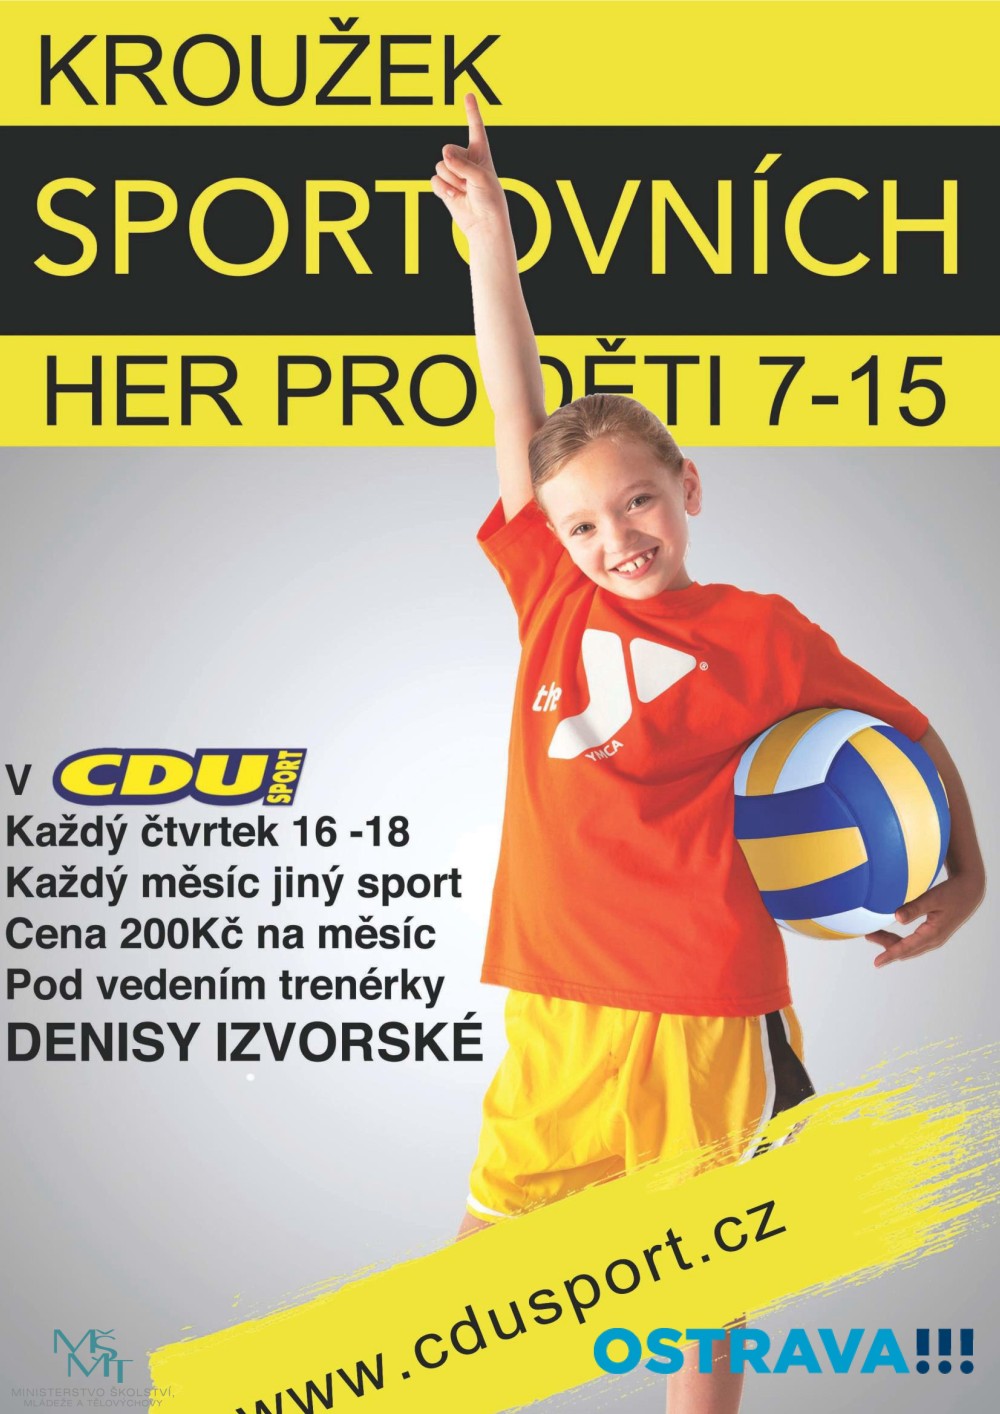 Kroužek sportovních her pro děti od 7 do 15 let Ostrava